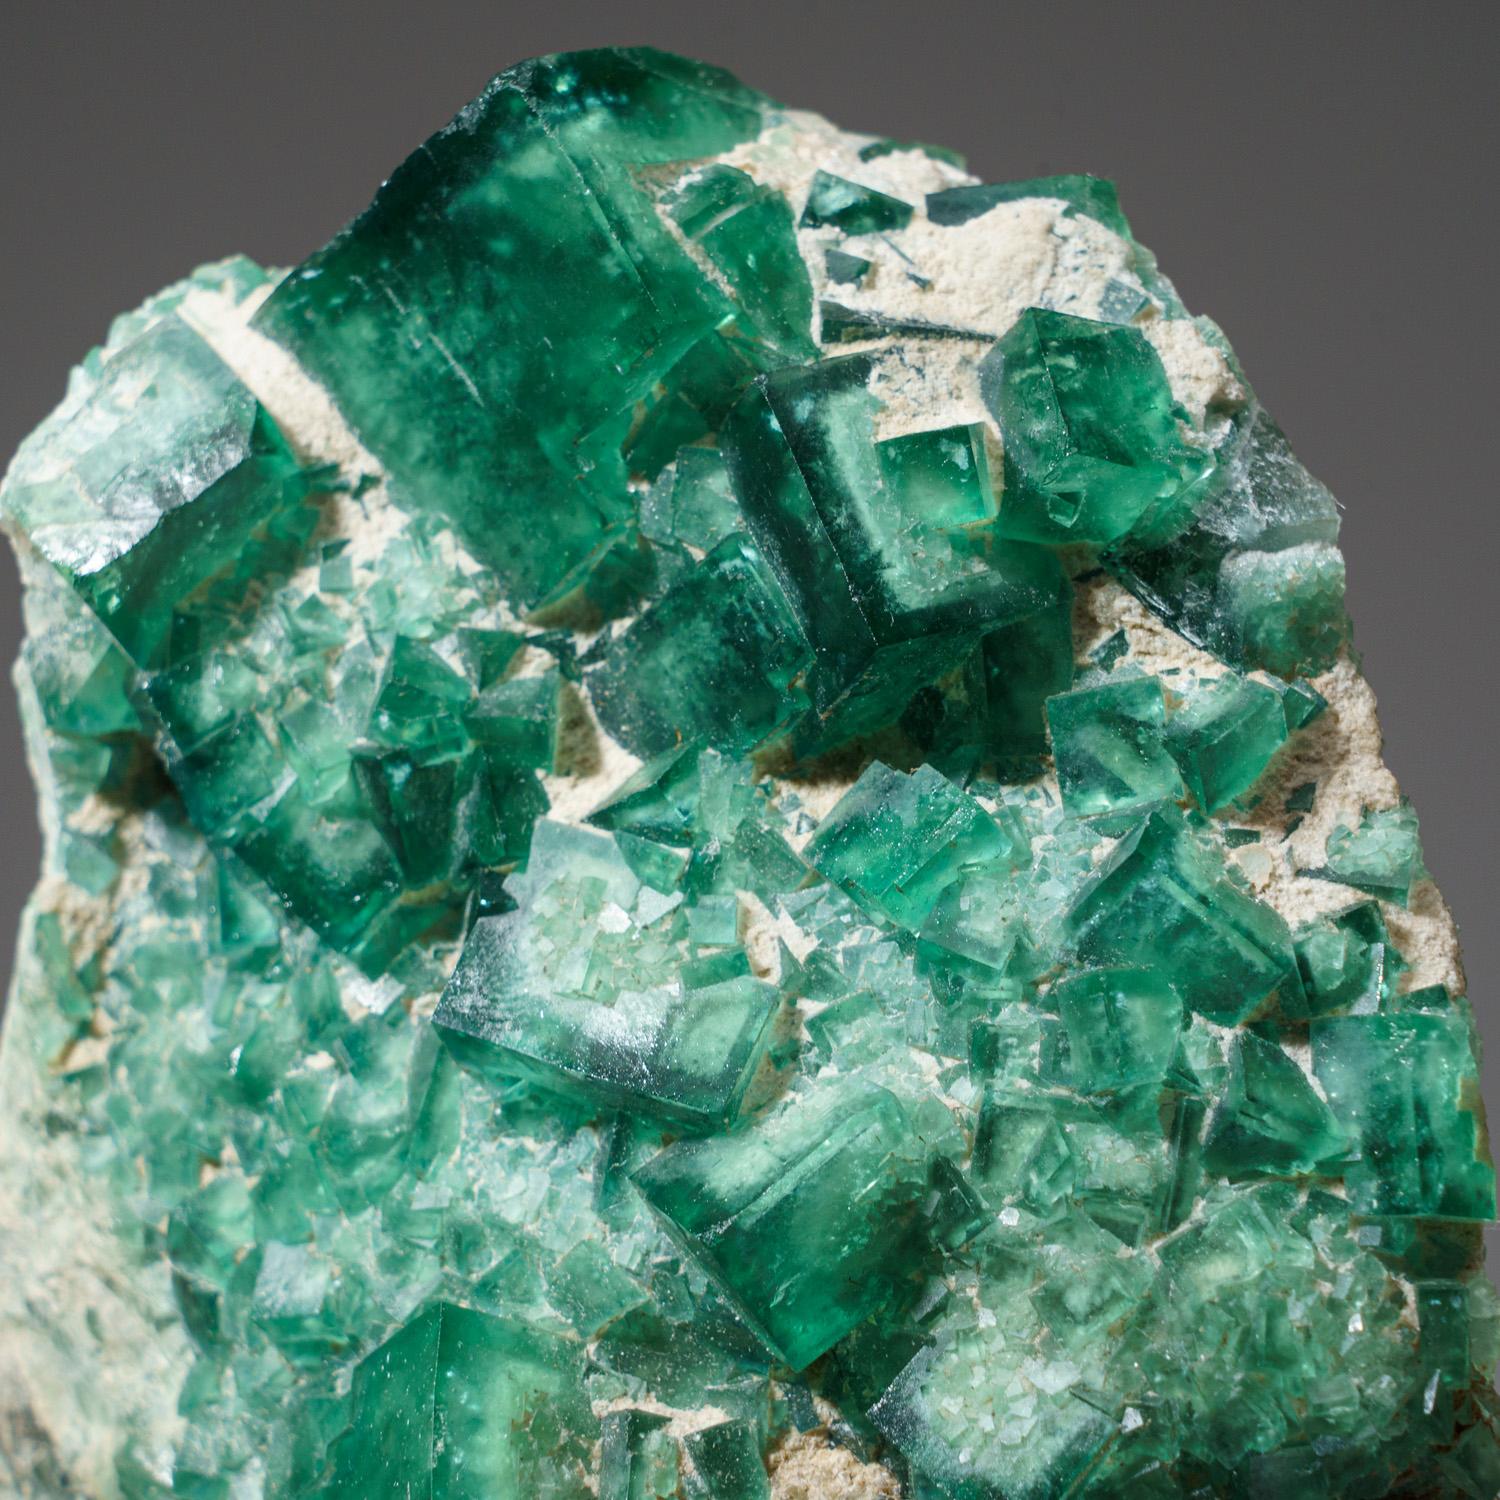 Transparente grüne kubische Fluoritkristalle mit leicht strukturierten Kristallflächen, die aus mikroskopisch kleinen oktaedrischen Flächen bestehen. Die leuchtend grüne Farbe ist sehr gut für diese klassische Fundstelle, die normalerweise dunkleren